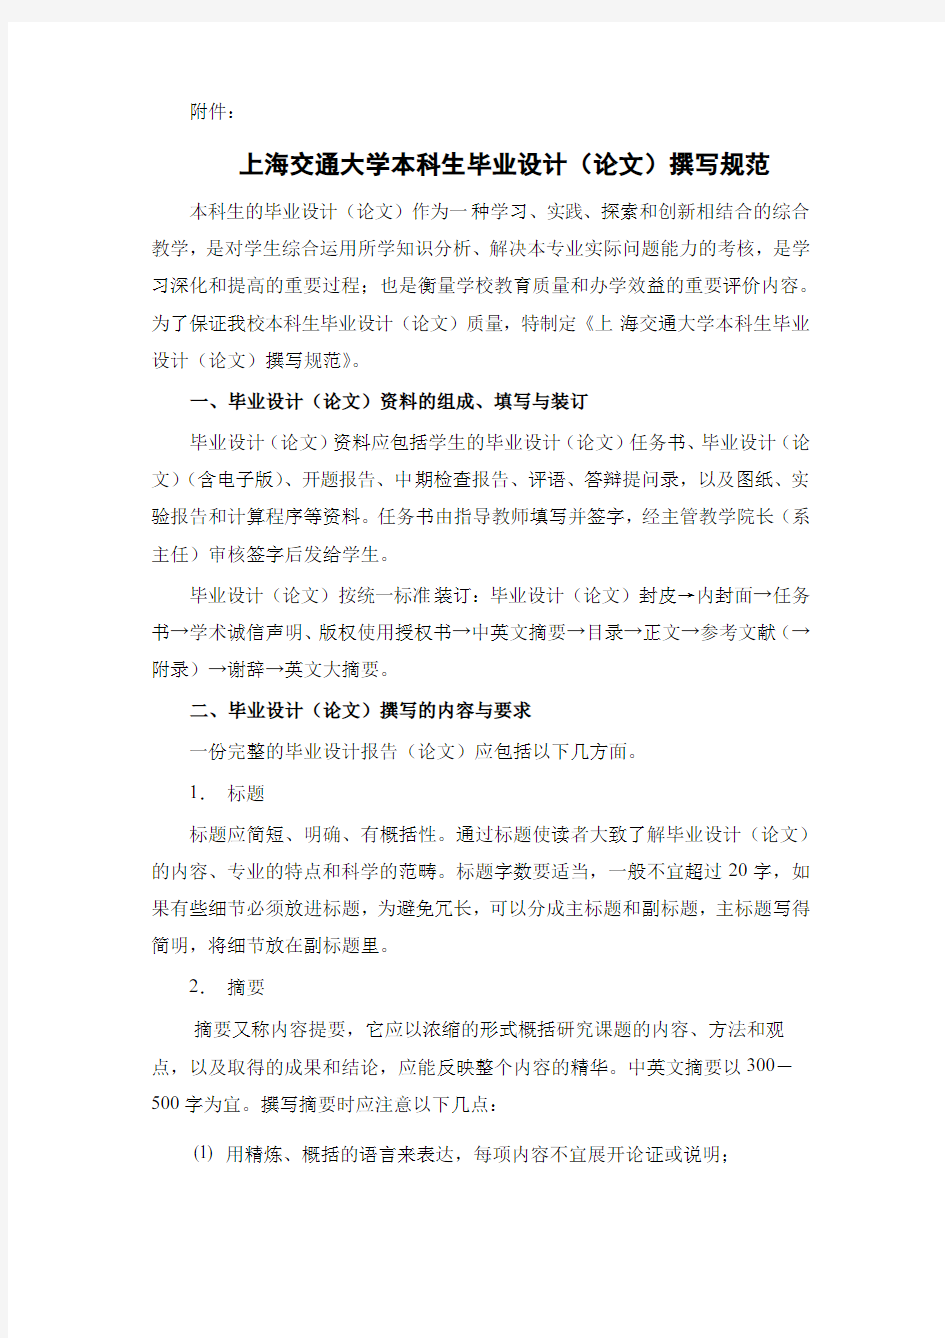 上海交通大学本科生毕业设计(论文)撰写规范